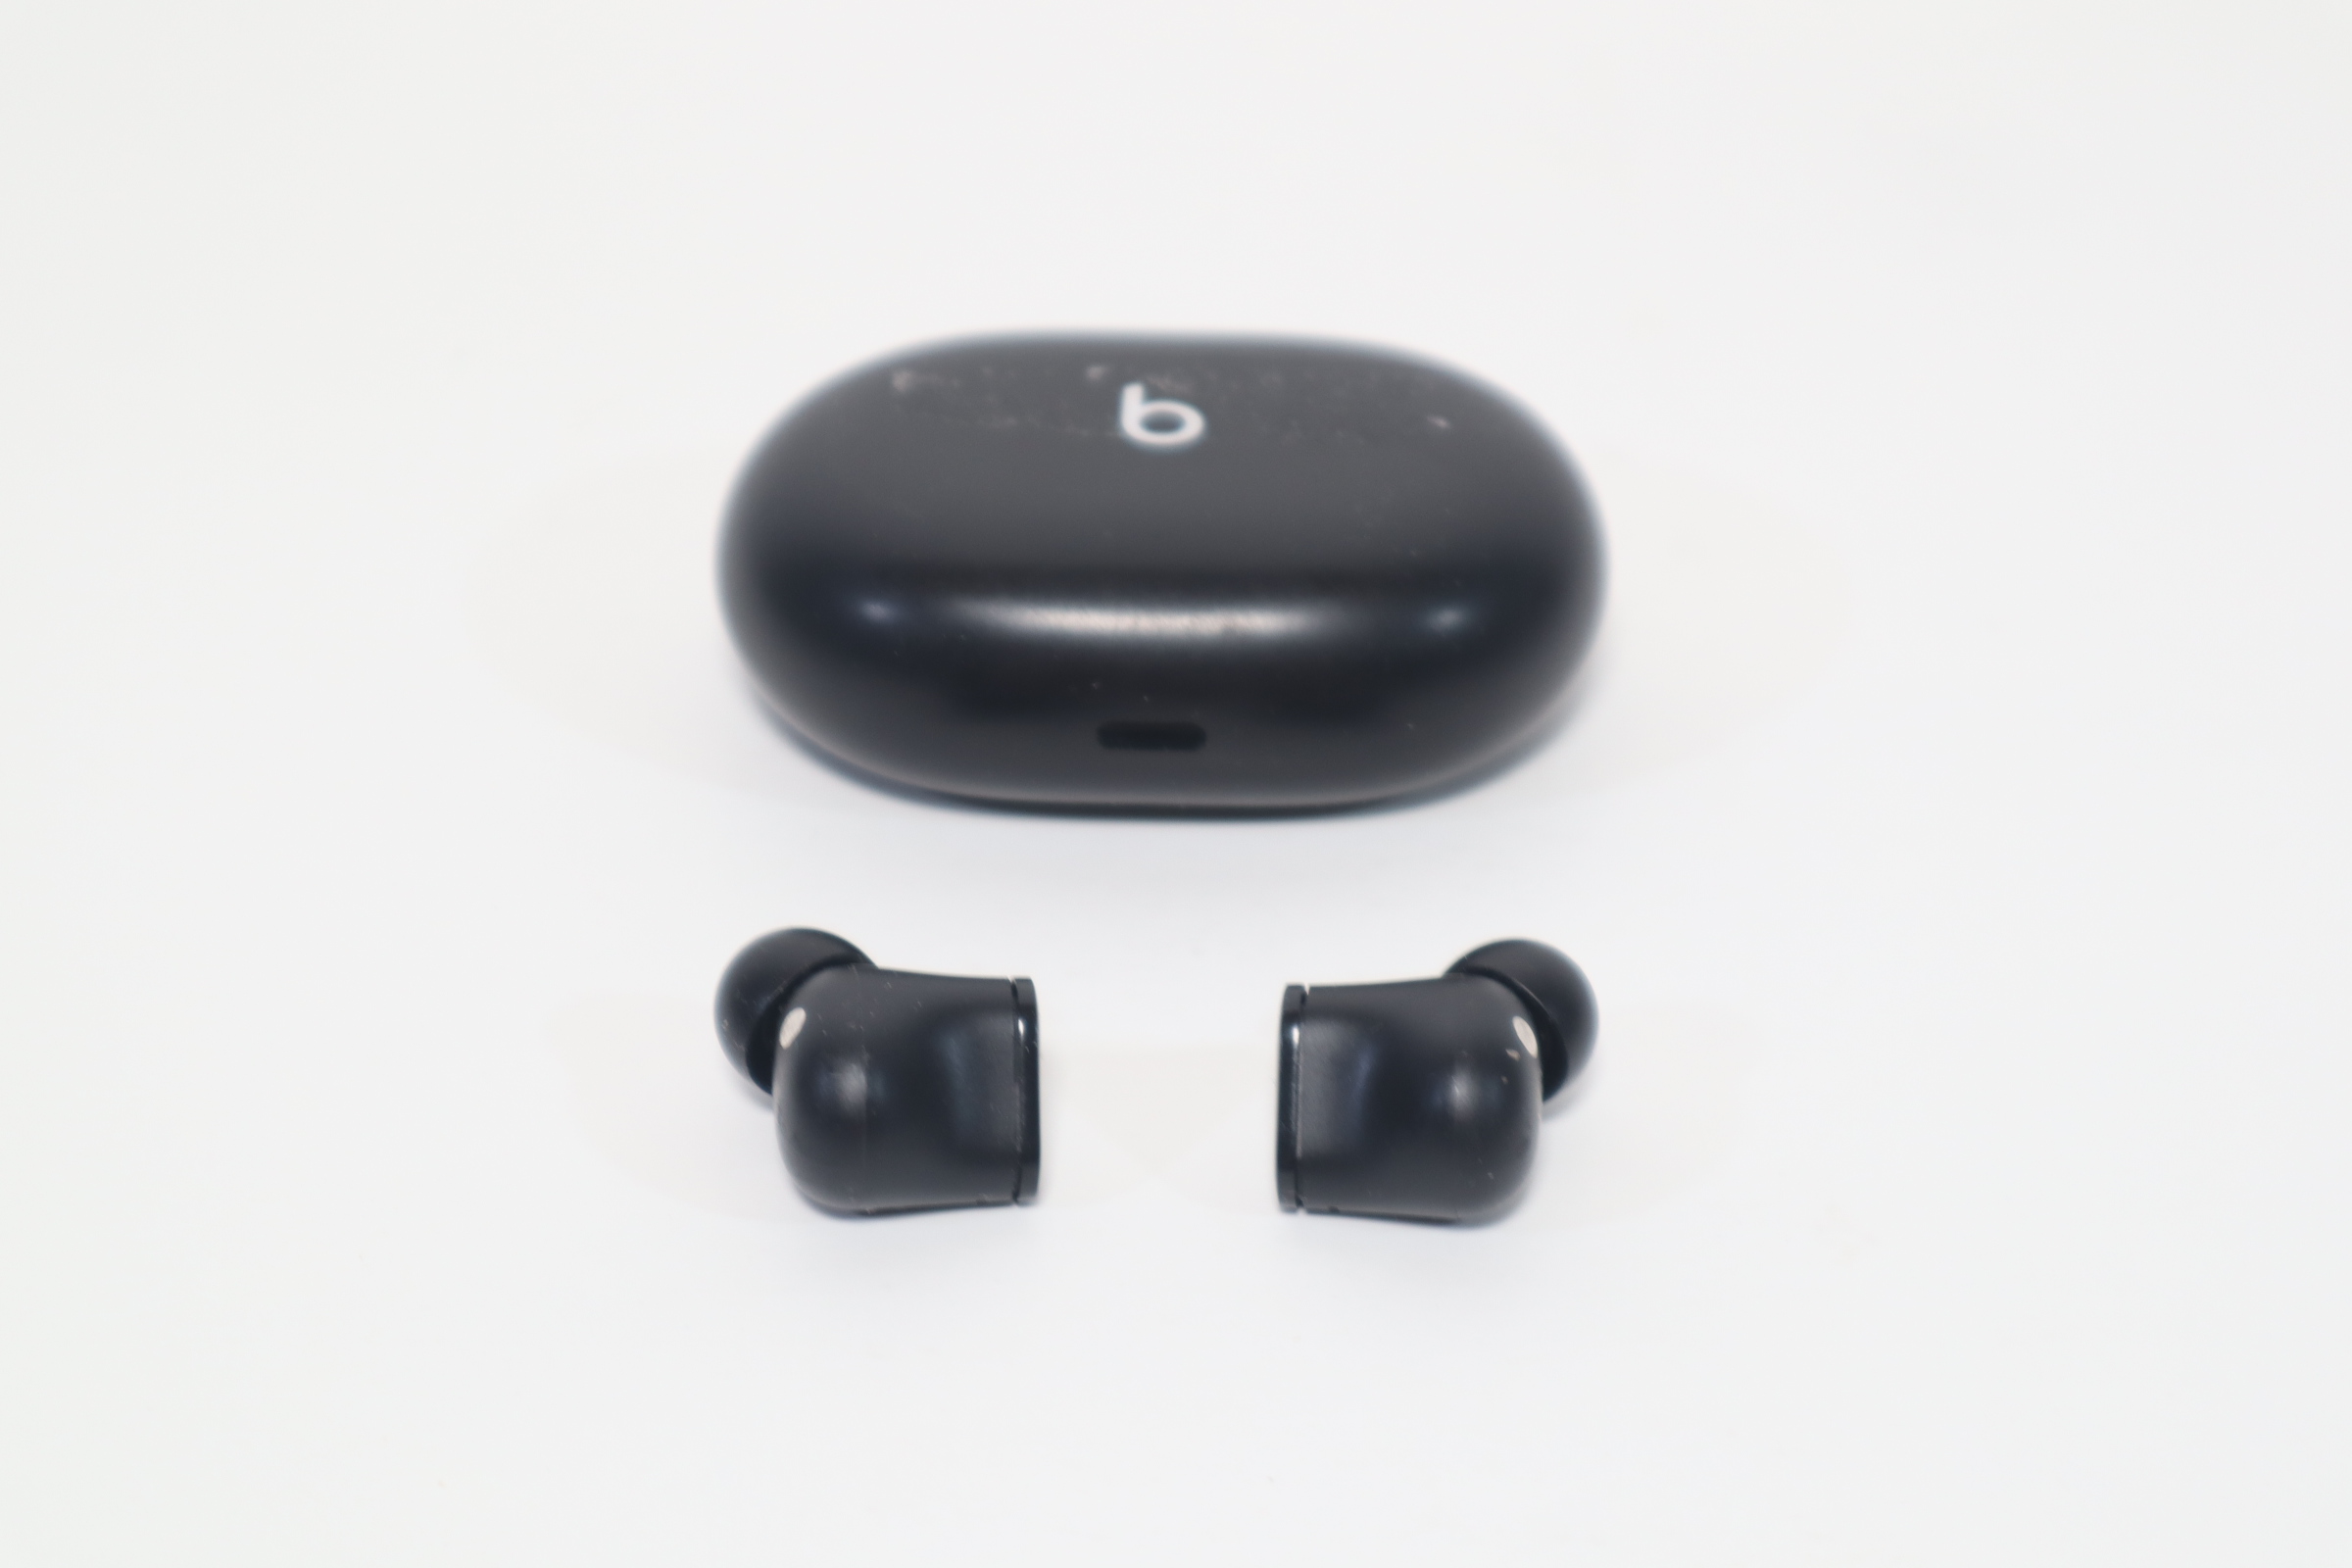 Beats Studio Buds True Wireless Noise Cancelling Earphones – Black - Apple